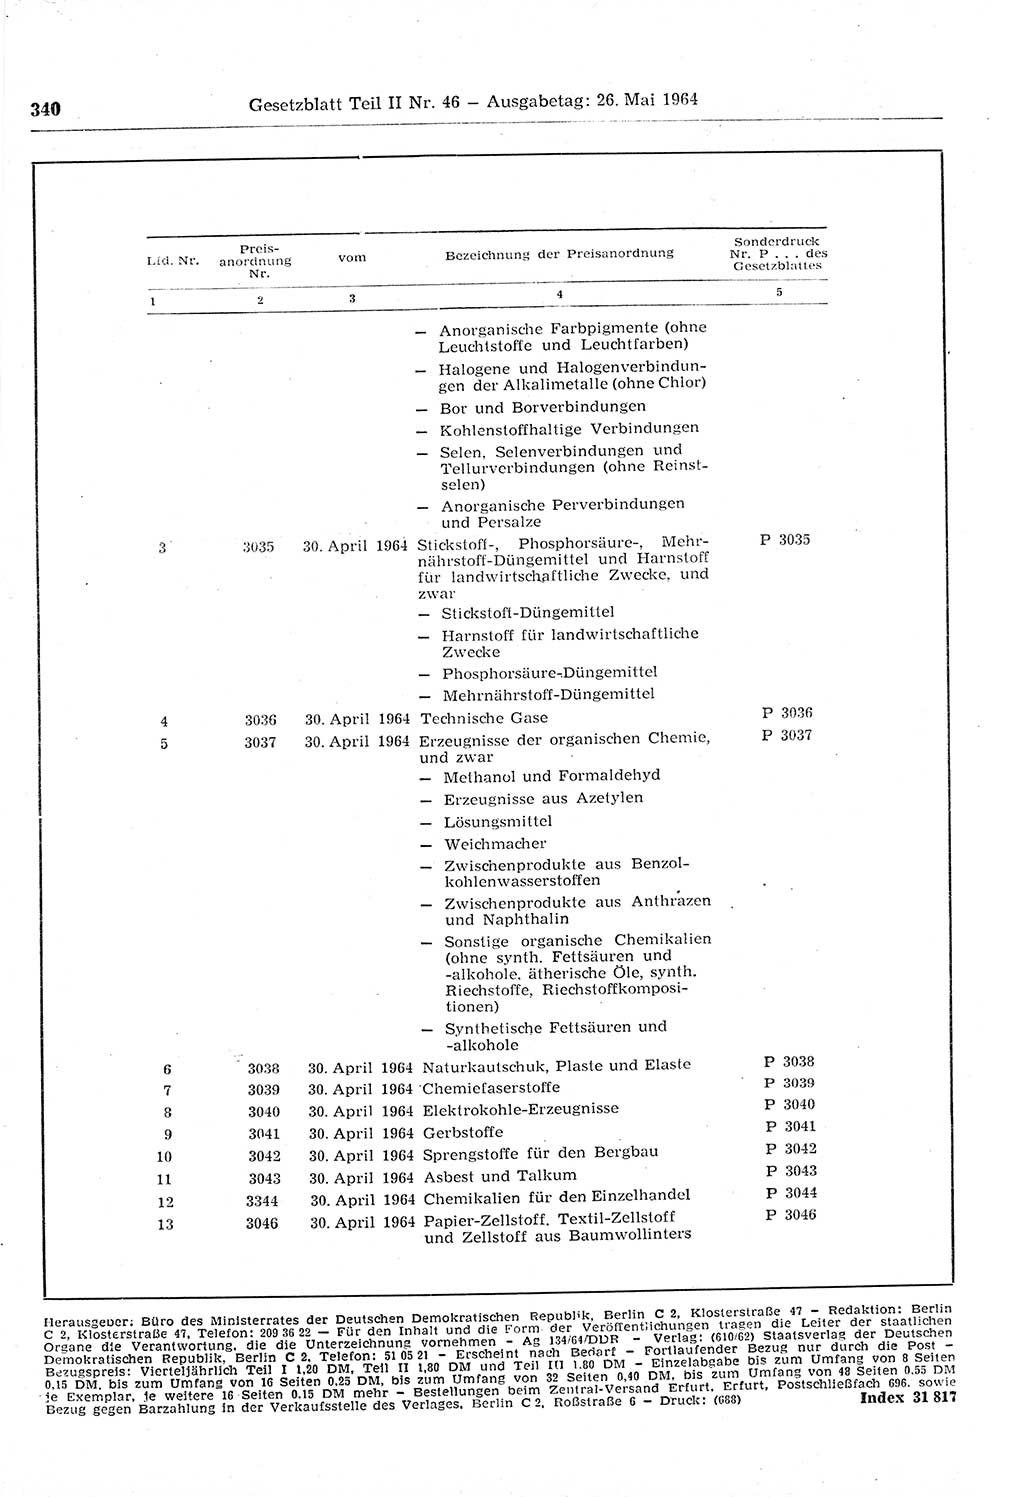 Gesetzblatt (GBl.) der Deutschen Demokratischen Republik (DDR) Teil ⅠⅠ 1964, Seite 340 (GBl. DDR ⅠⅠ 1964, S. 340)